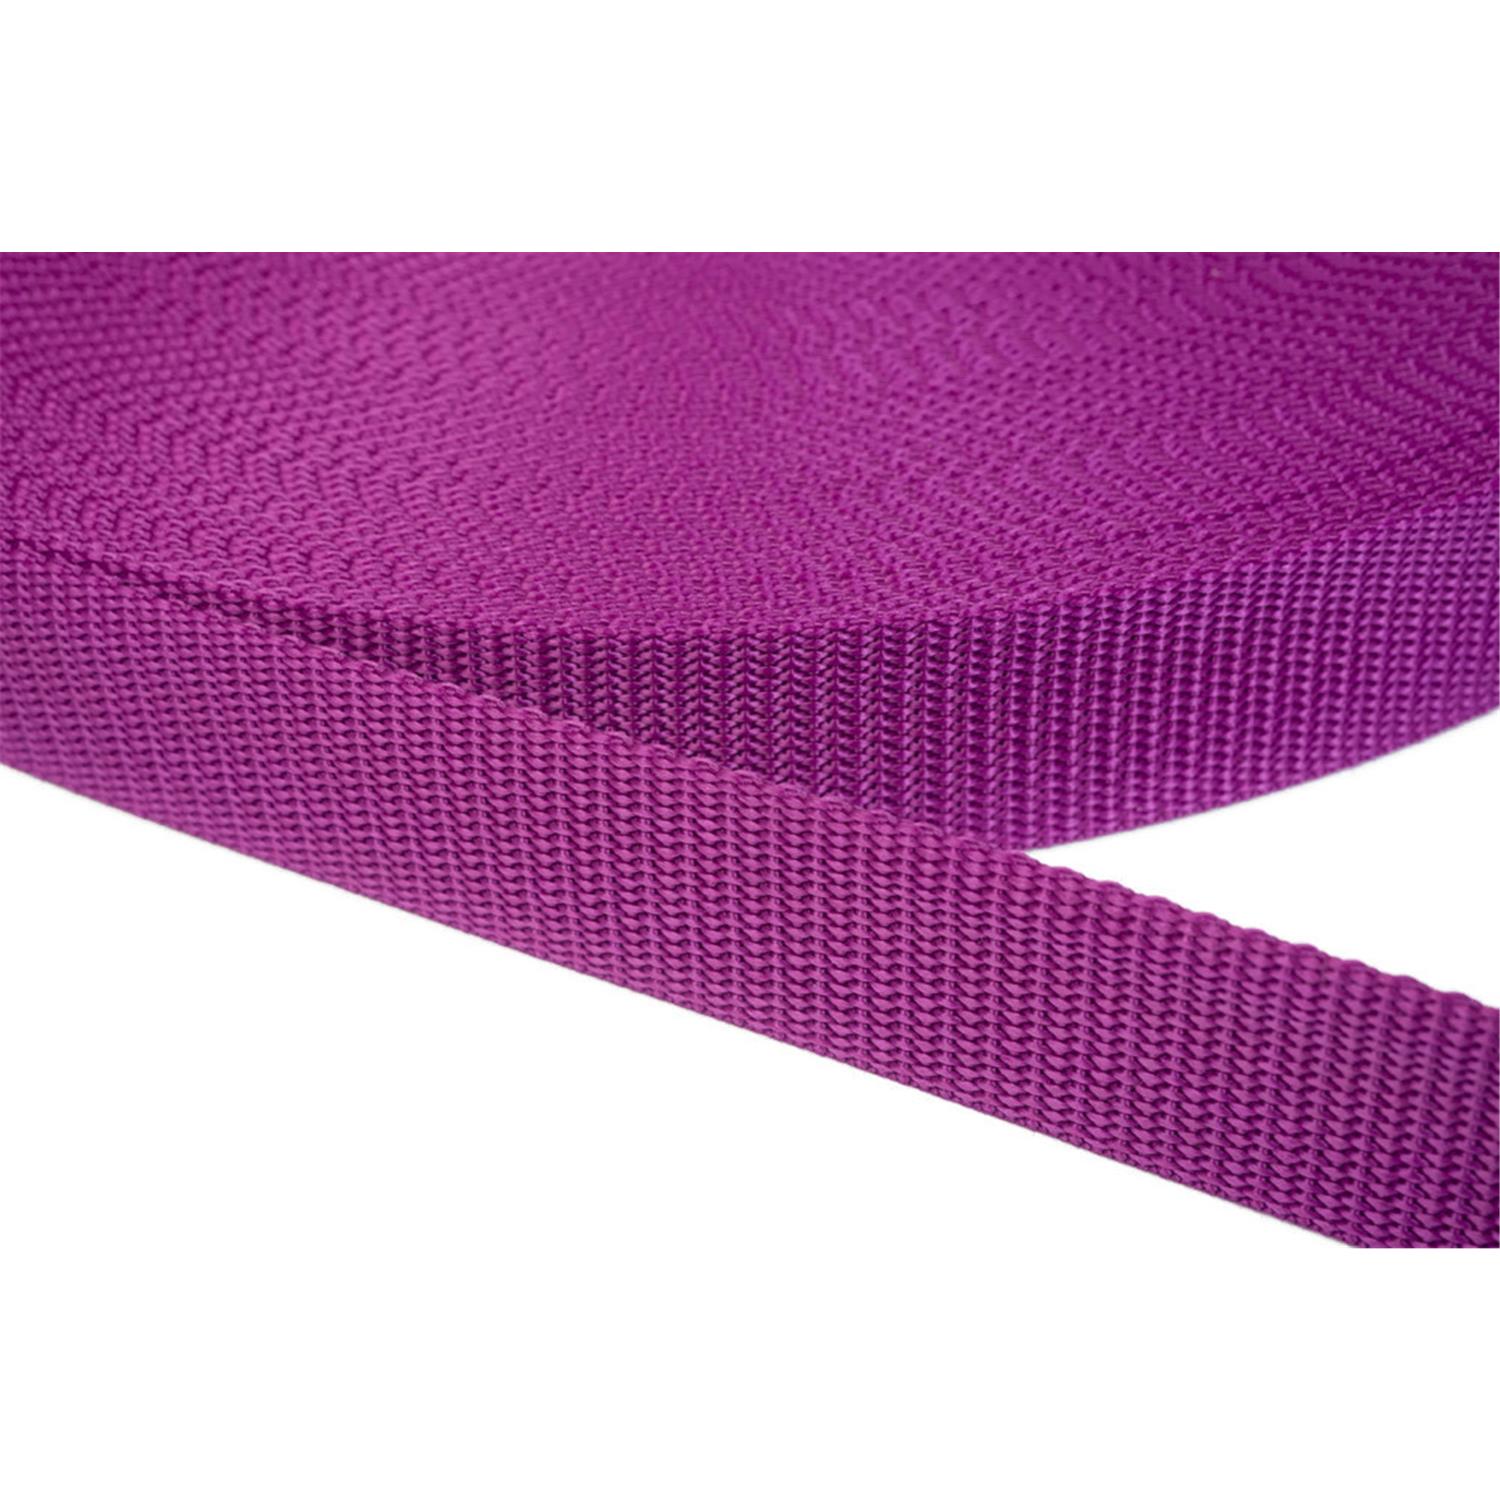 Gurtband 50mm breit aus Polypropylen in 41 Farben 22 - violettrot 50 Meter